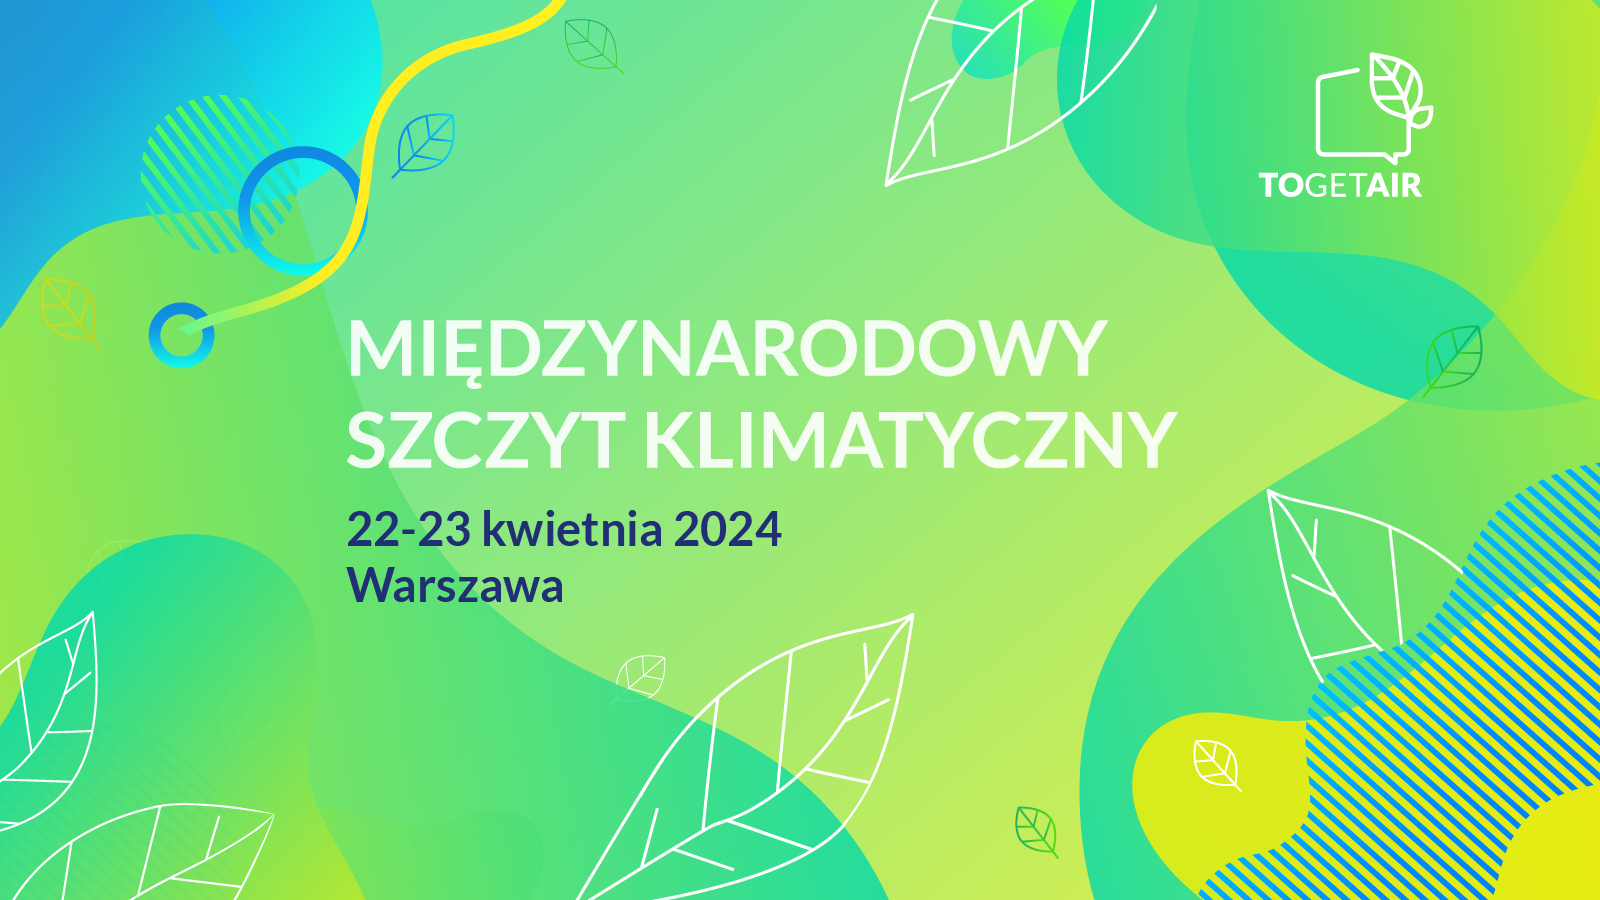 TOGETAIR rusza już 22-23 kwietnia 2024 r. Wydarzenie odbędzie się w Warszawie